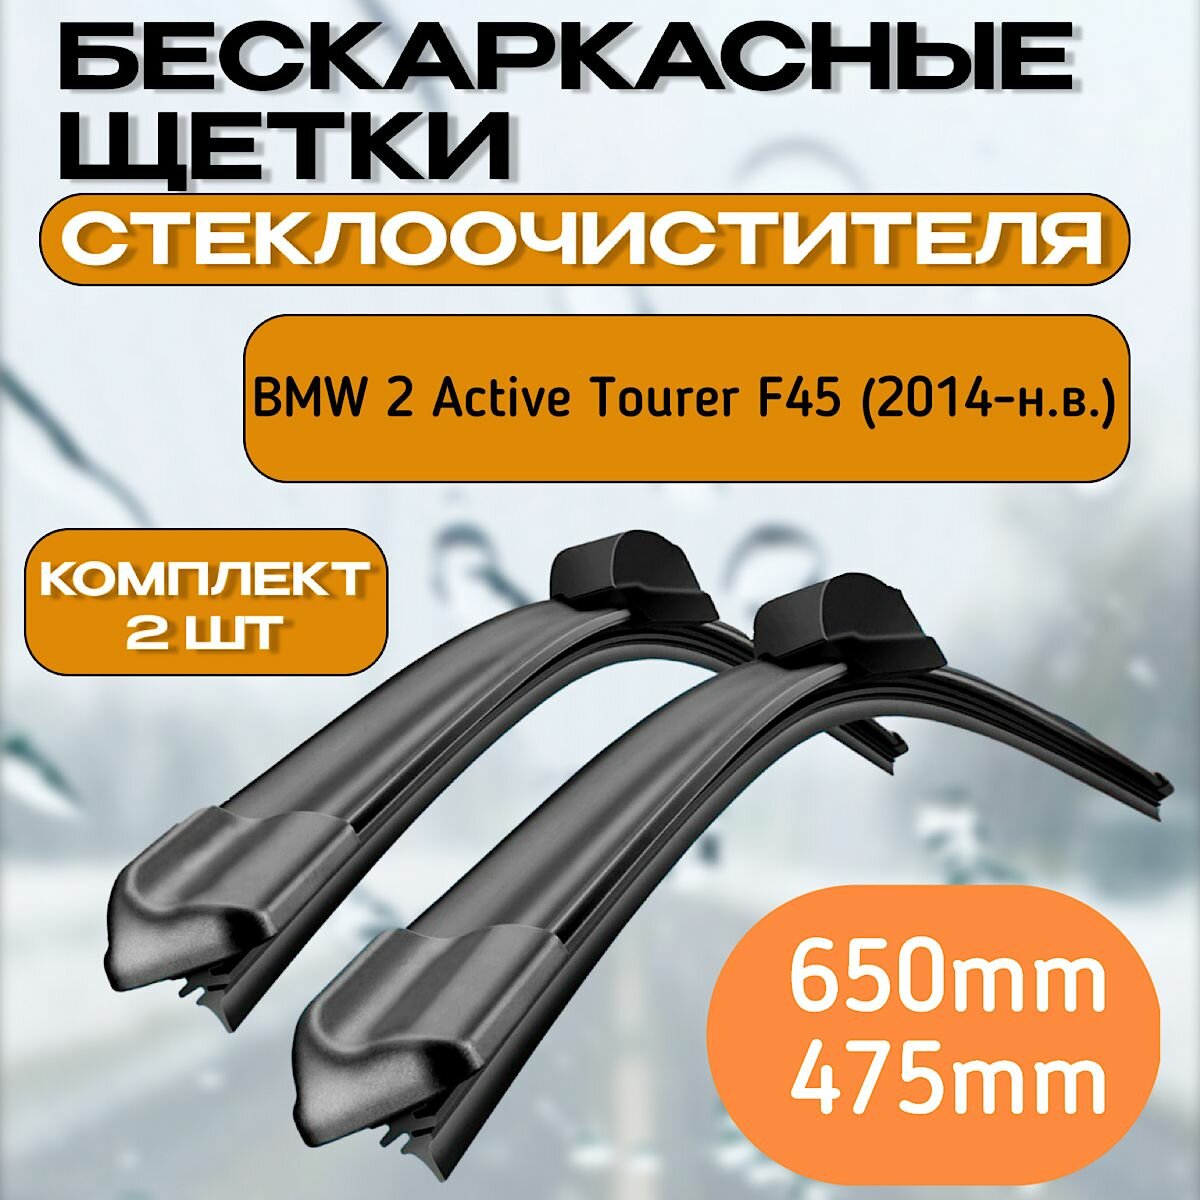 Бескаркасные щетки стеклоочистителя BMW 2 Active Tourer F45 (2014-н. в.) / Бескаркасные дворники Бмв 2 650mm-475mm Push Button 19mm